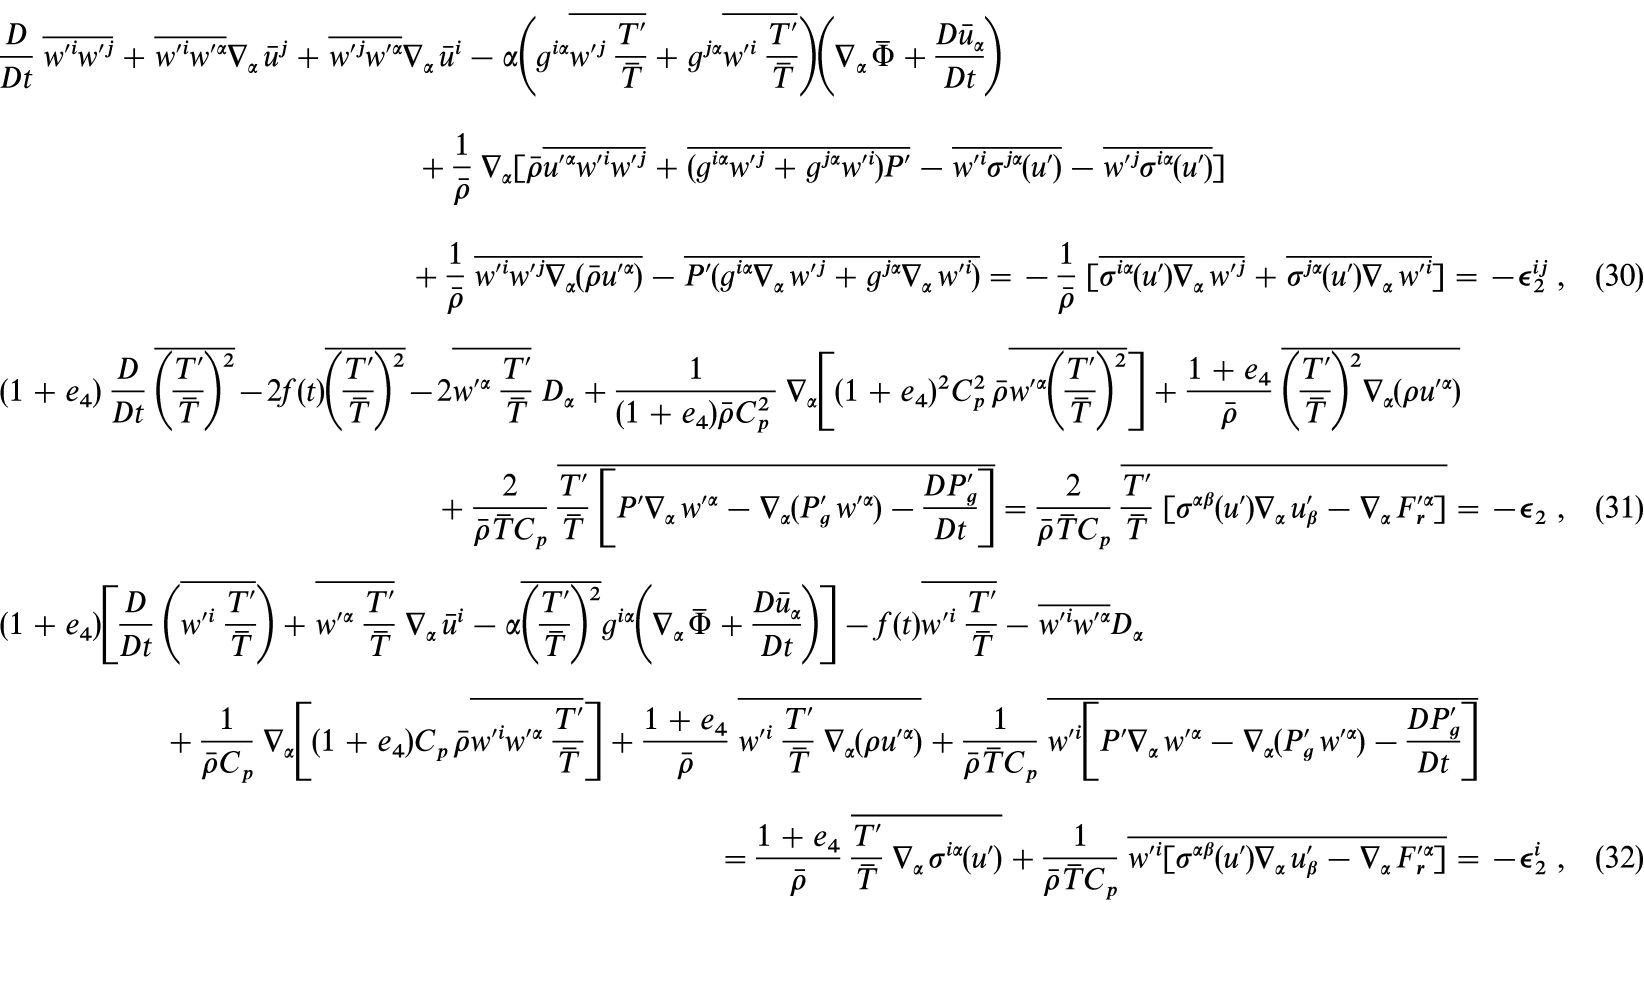 Самый сложный пример в математике в мире. Самоеисложное уравнение. Самое сложное уравнение. Самыетсложные уравнения в математике. Самое сложное математическое уравнение.